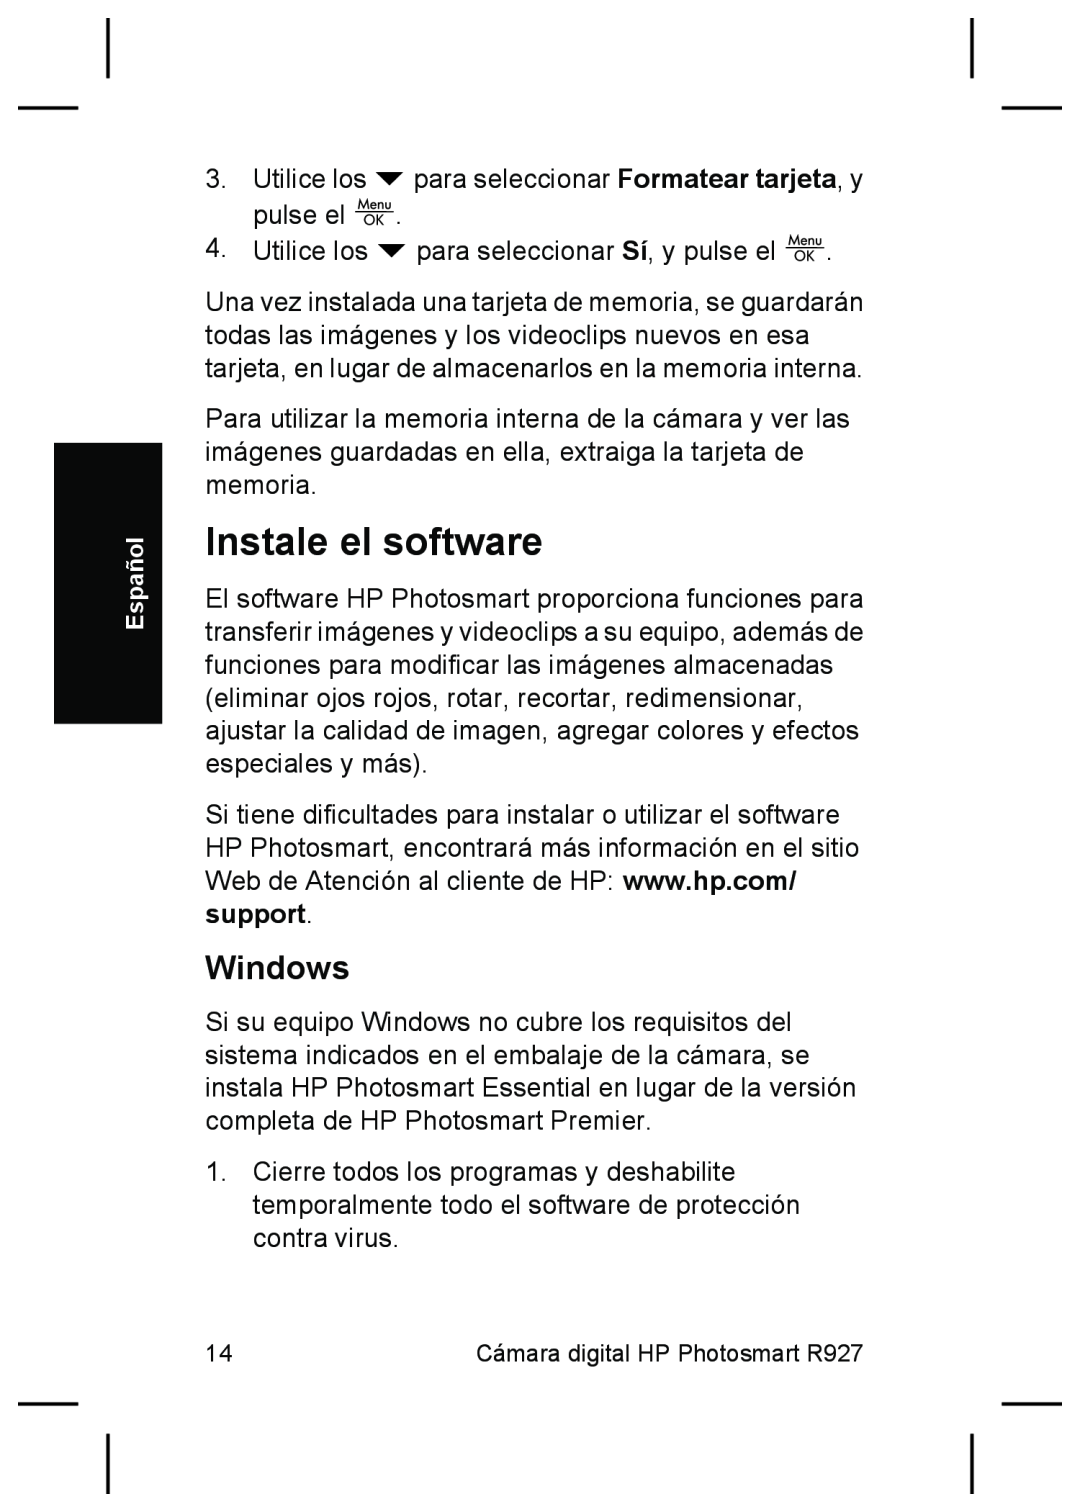 HP R927 manual Instale el software, Windows 